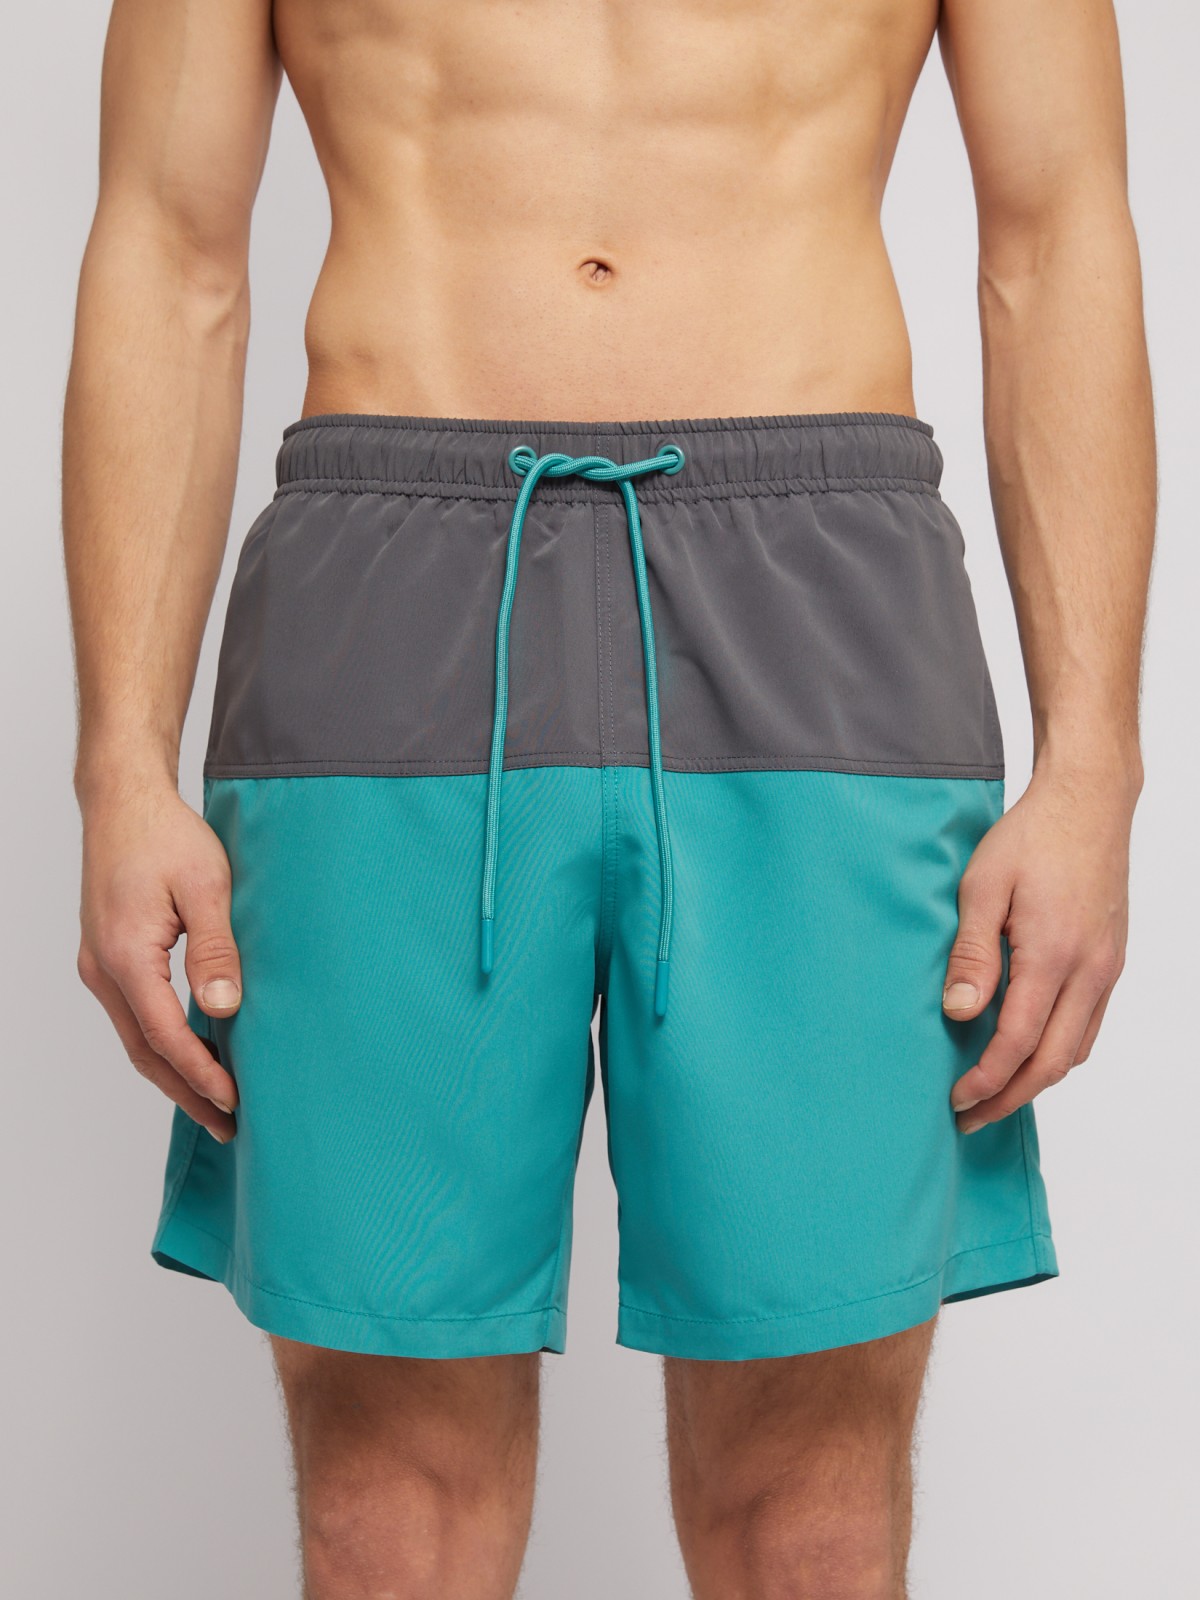 Пляжные шорты (для плавания) zolla N14247S39023, цвет бирюзовый, размер XS - фото 2